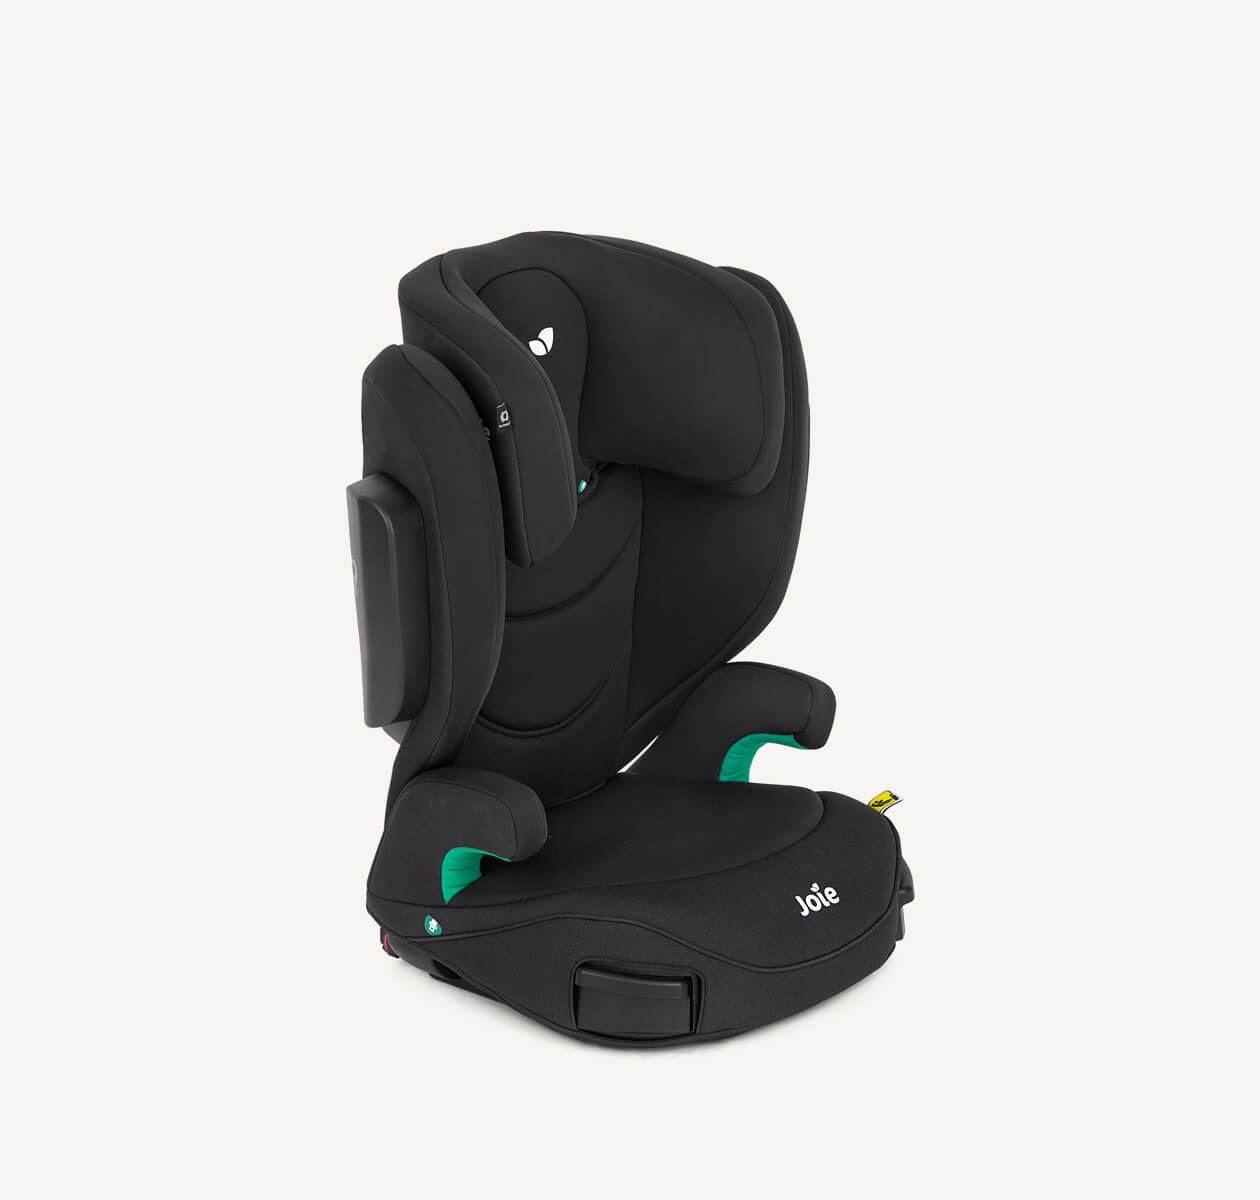 Rehausseur de siège à dossier haut i-Trillo FX, coloris noir, tourné vers la droite à un angle de 45 degrés avec têtière abaissée en position maximale.